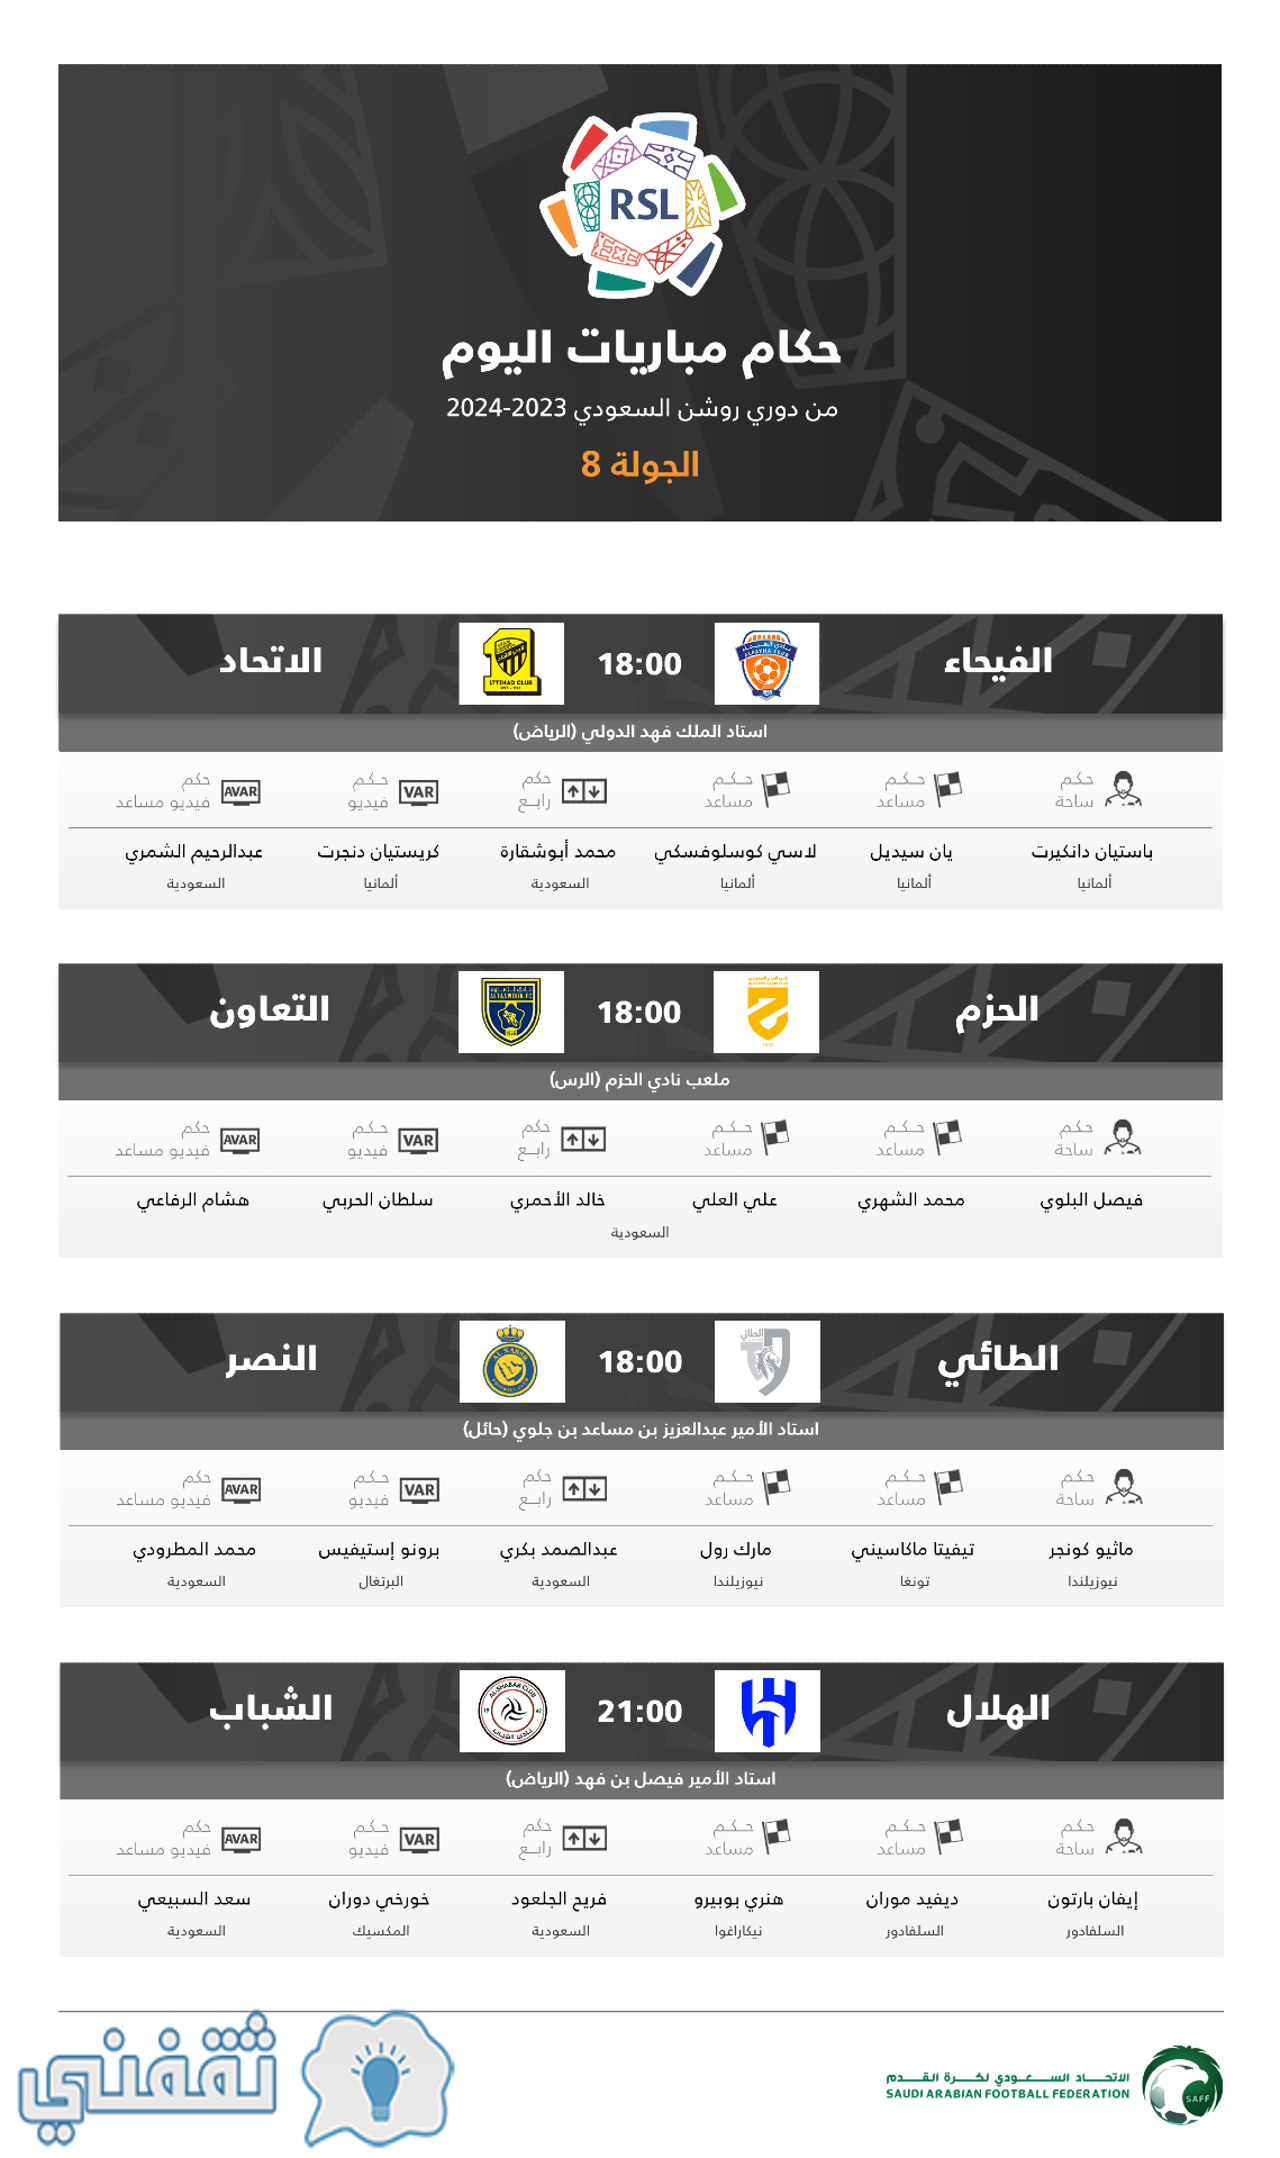 طاقم حكام مباريات اليوم الأول (الجمعة) من الدوري السعودي 2023_2024